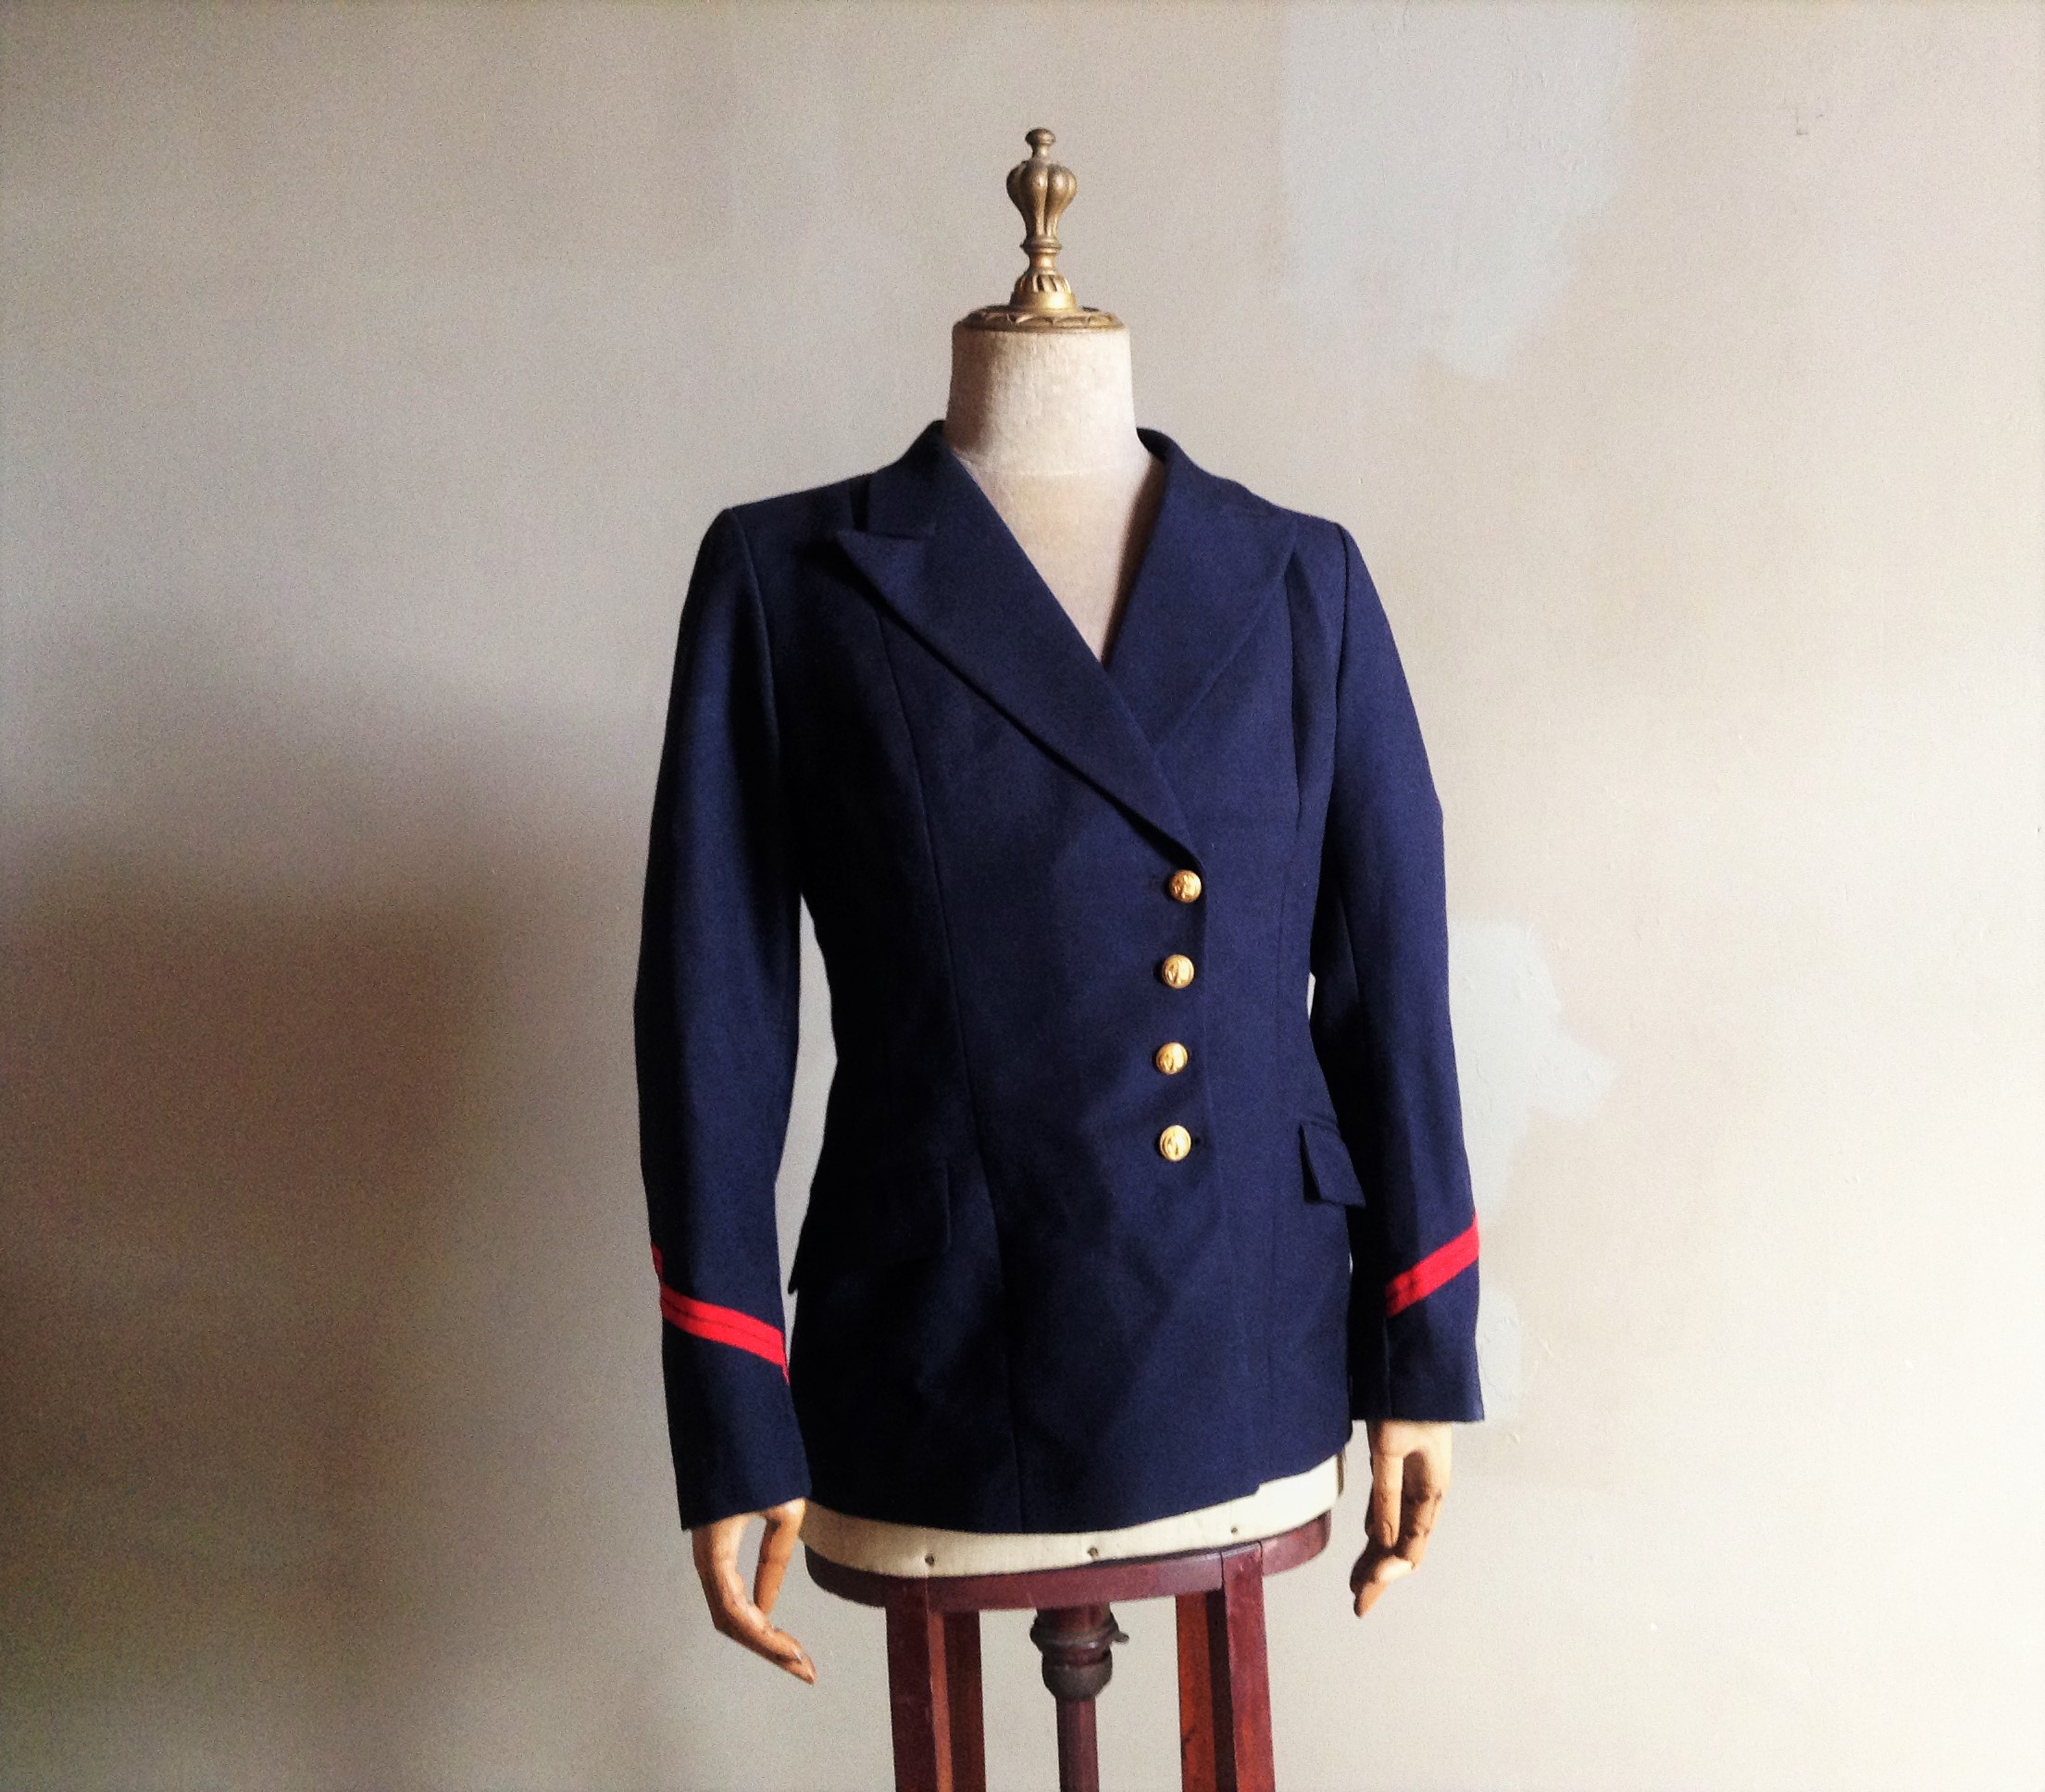 フランス海軍 女性用の礼装用制服の一式 ｅｌｅｇａｎｓｏｌｄａｔ オシャレなヨーロッパのミリタリーグッズ専門ブログ